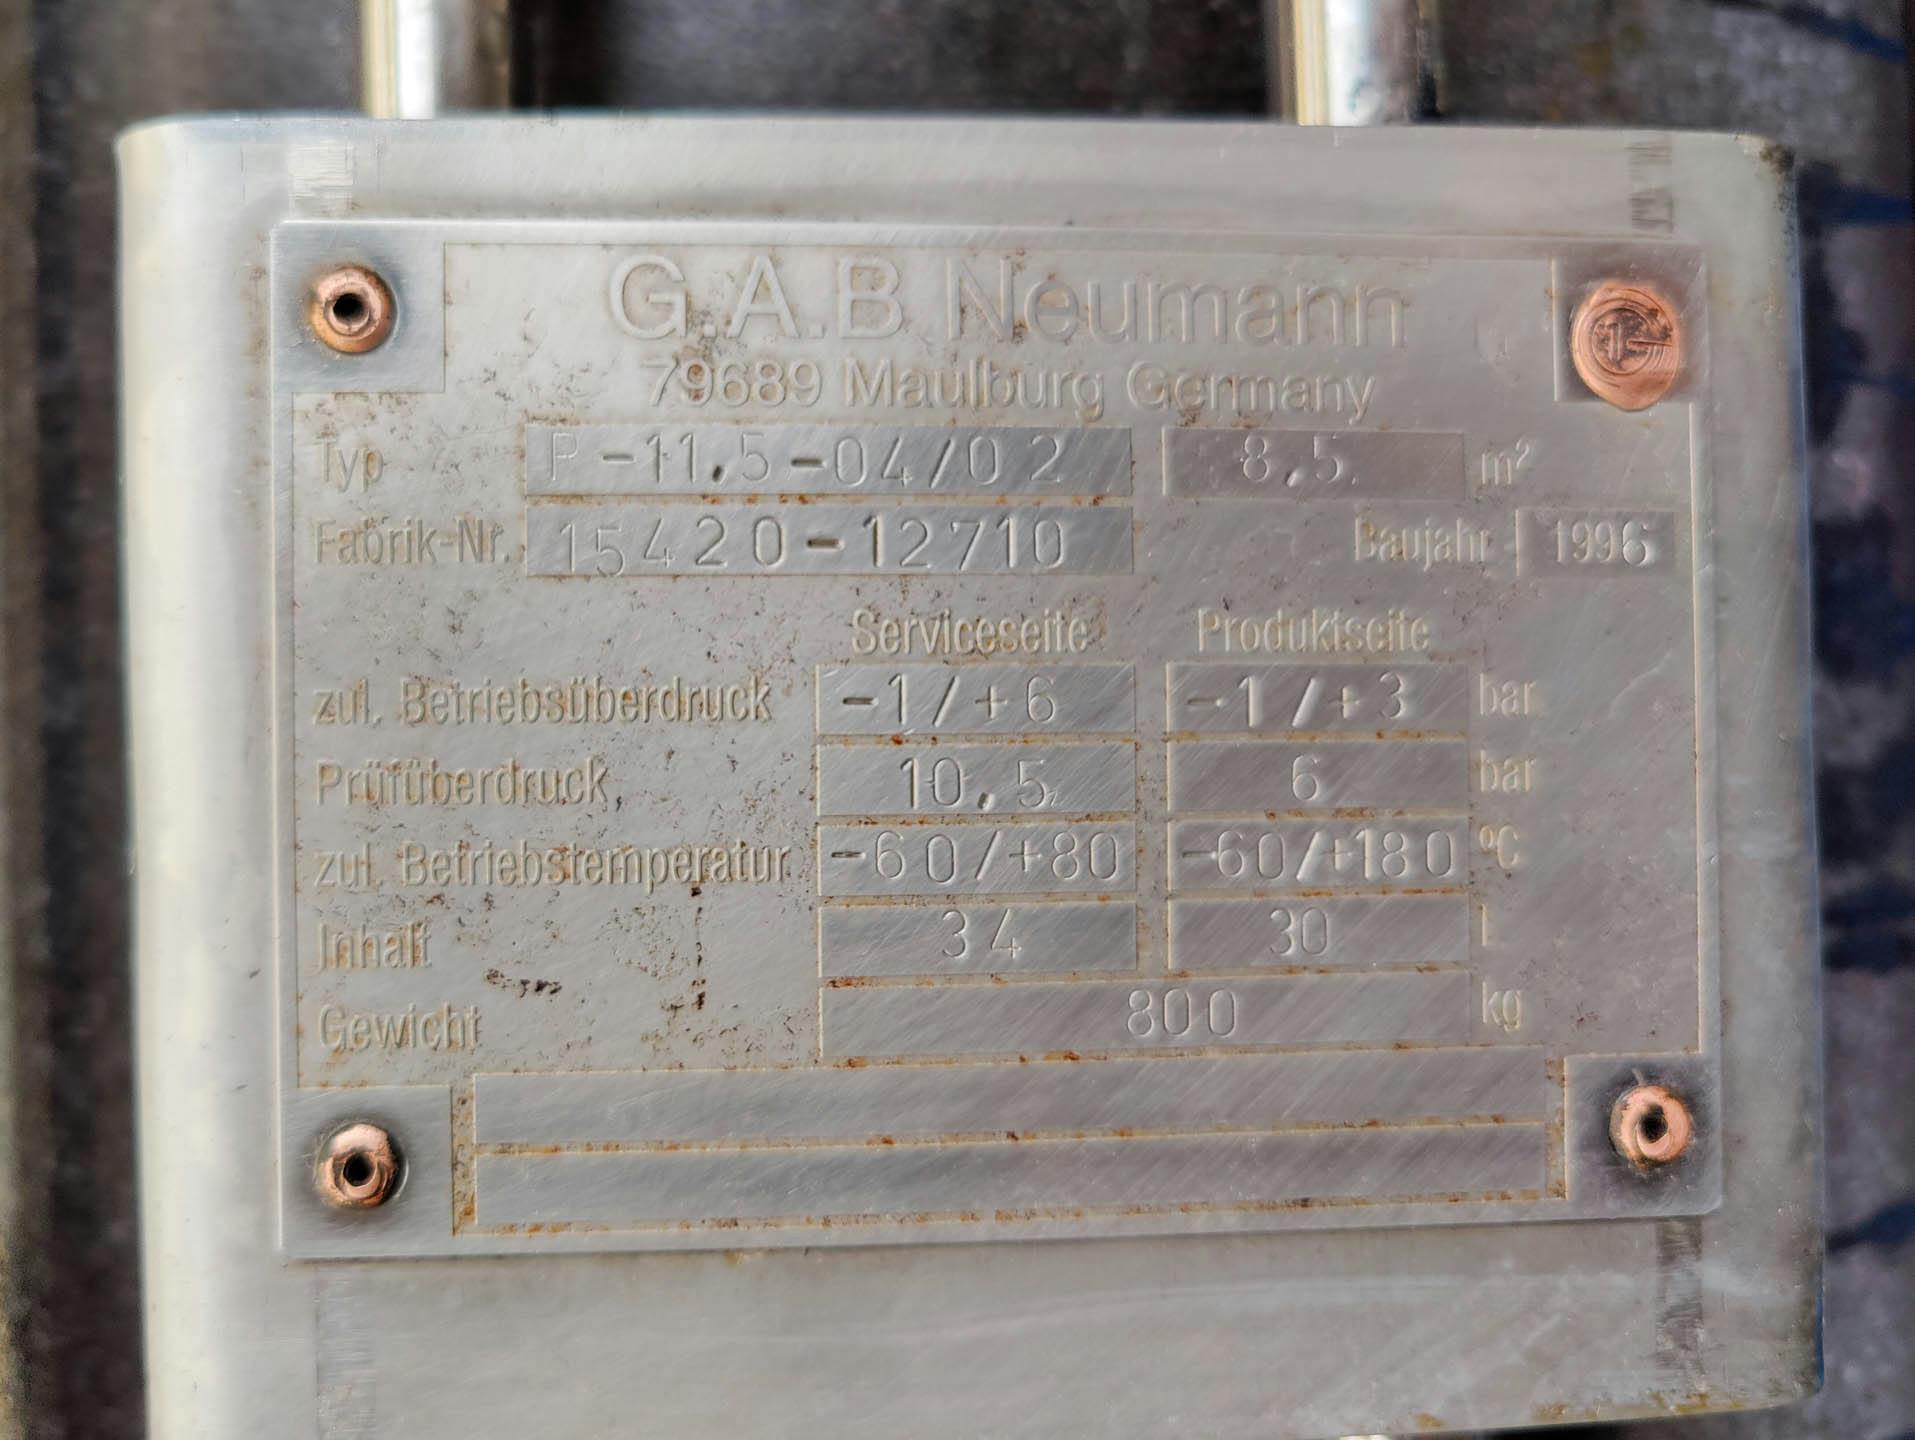 Gab Neumann R-11,5-04/02 Ringnut - Échangeur de température tubulaire - image 6